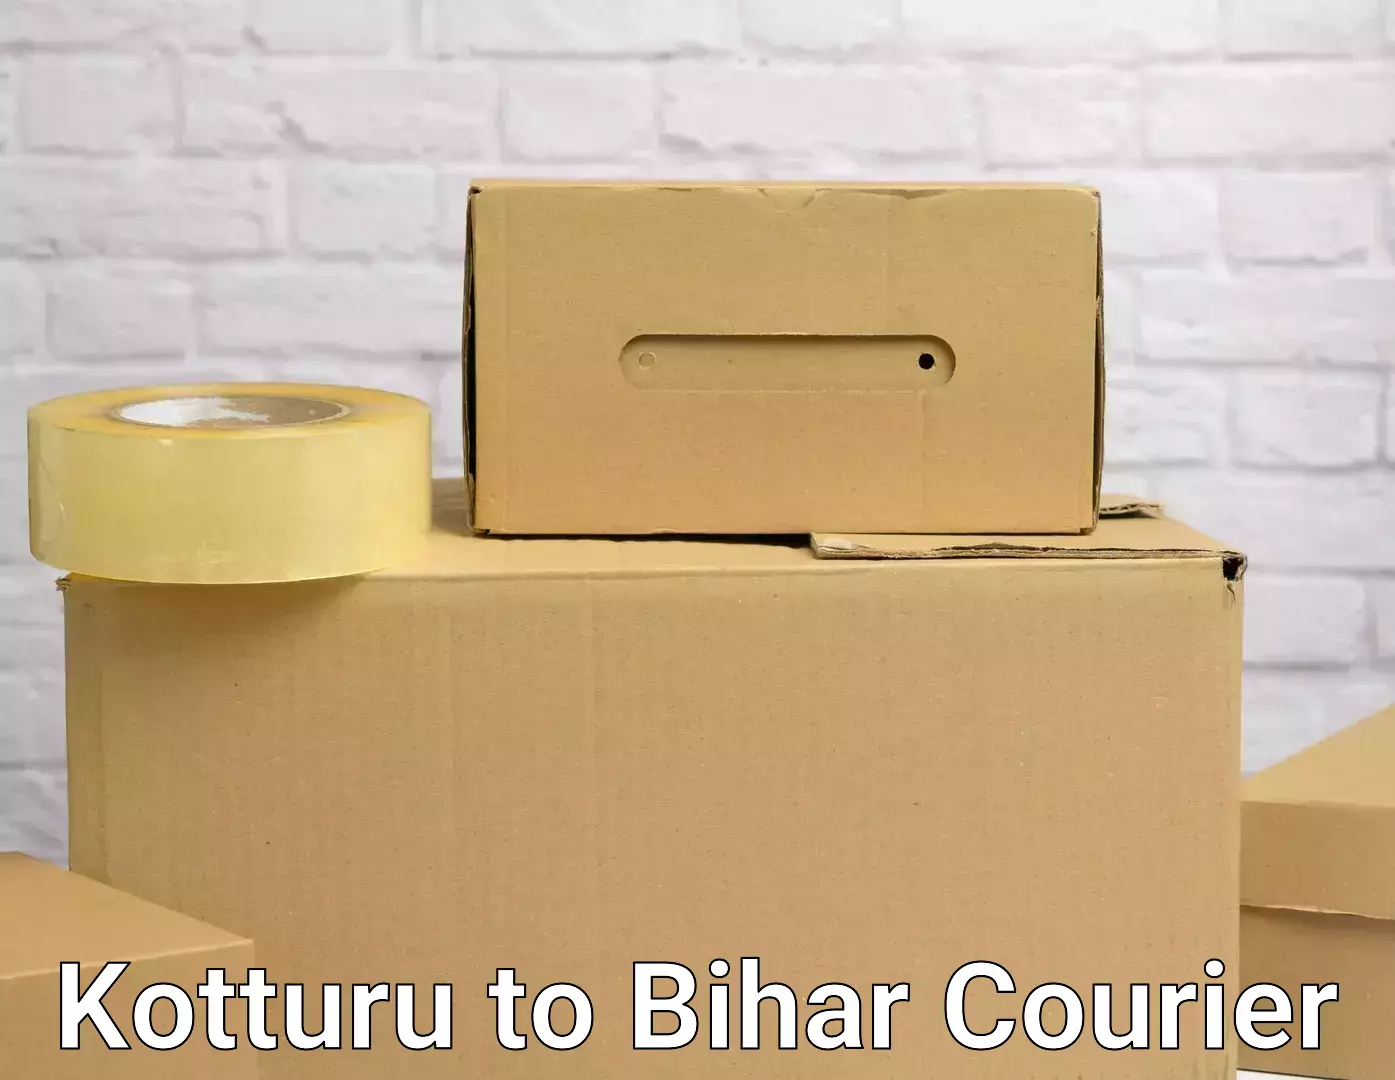 Full-service household moving Kotturu to Bakhtiarpur